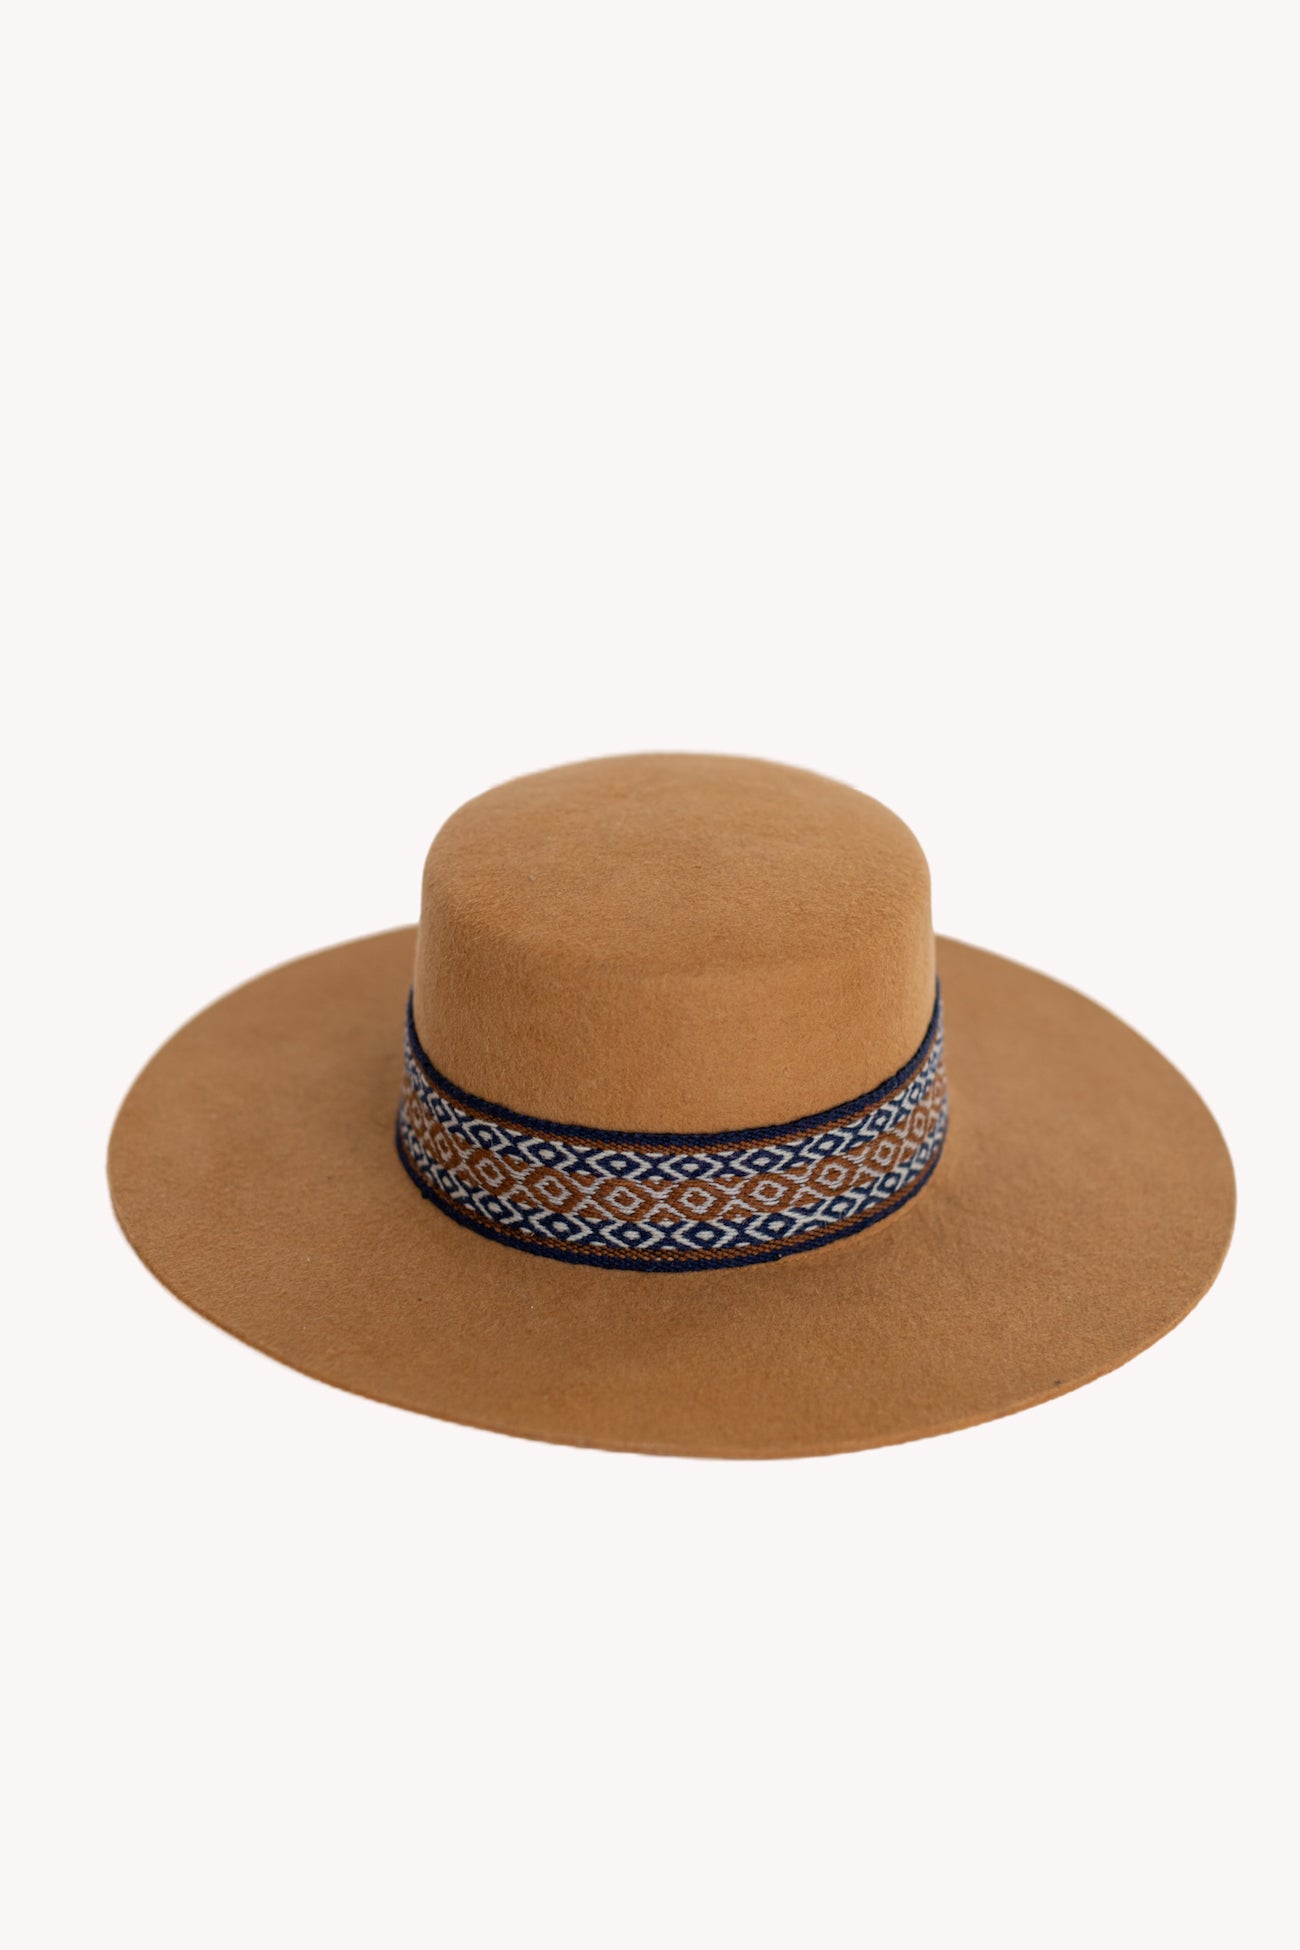 Tan Spanish style alpaca wool sustainable hat